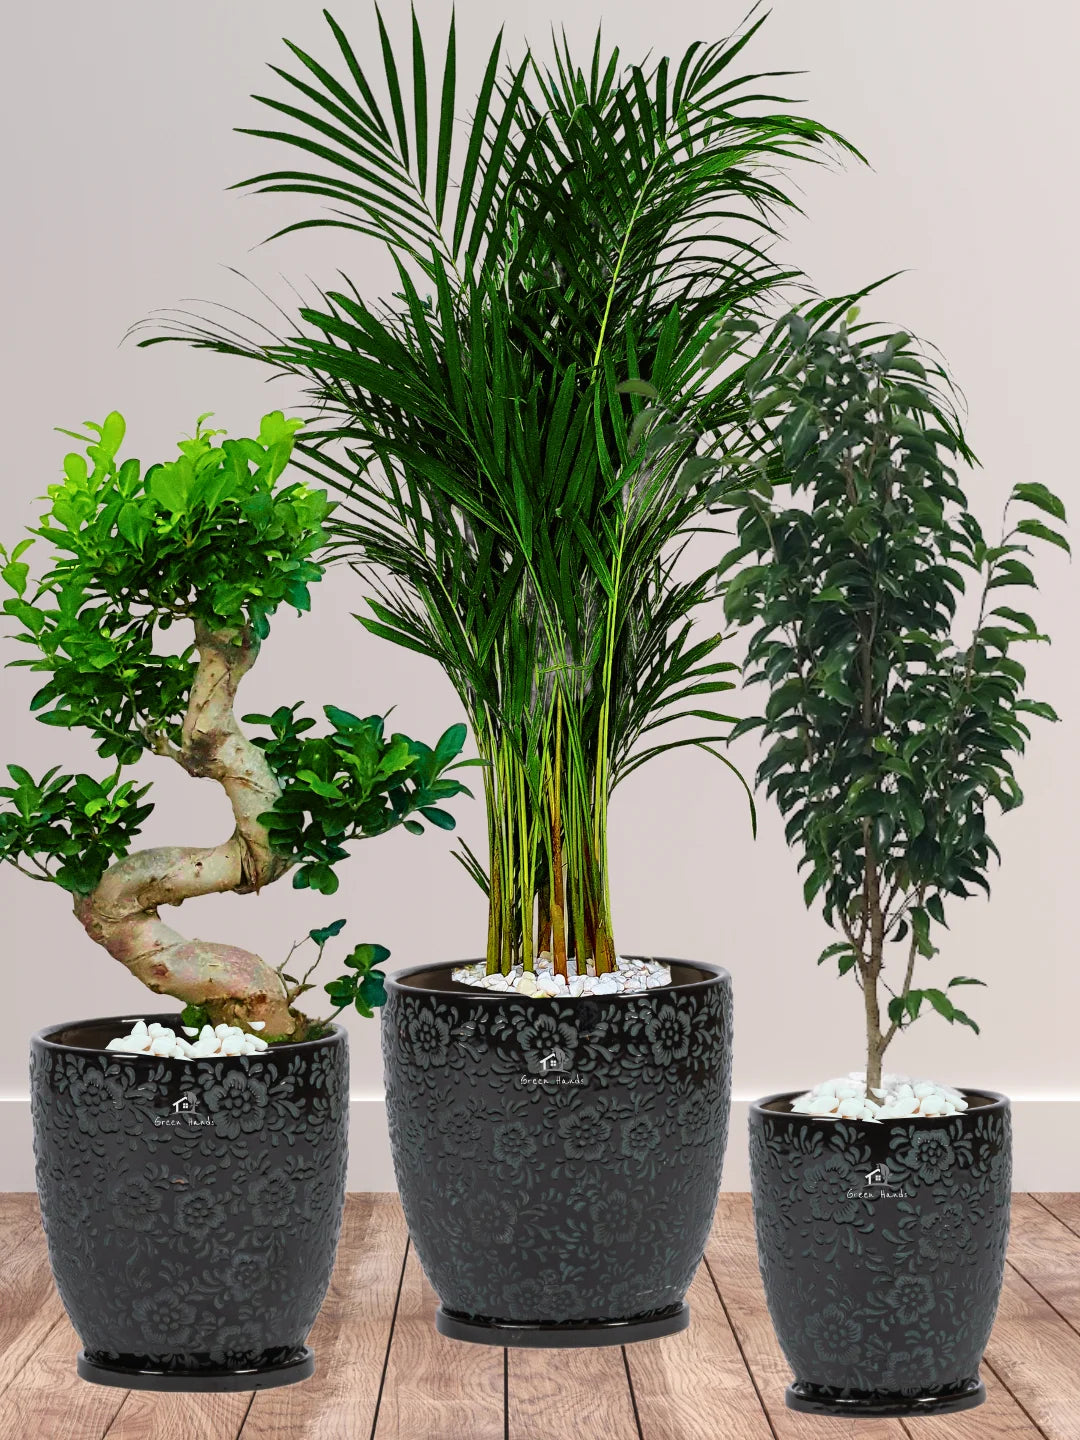 Premium Plants Bundle - Areca Palm, Ficus Benjamina, S Bonsai Tree in Premium Imari Black Floral Ceramic Pots